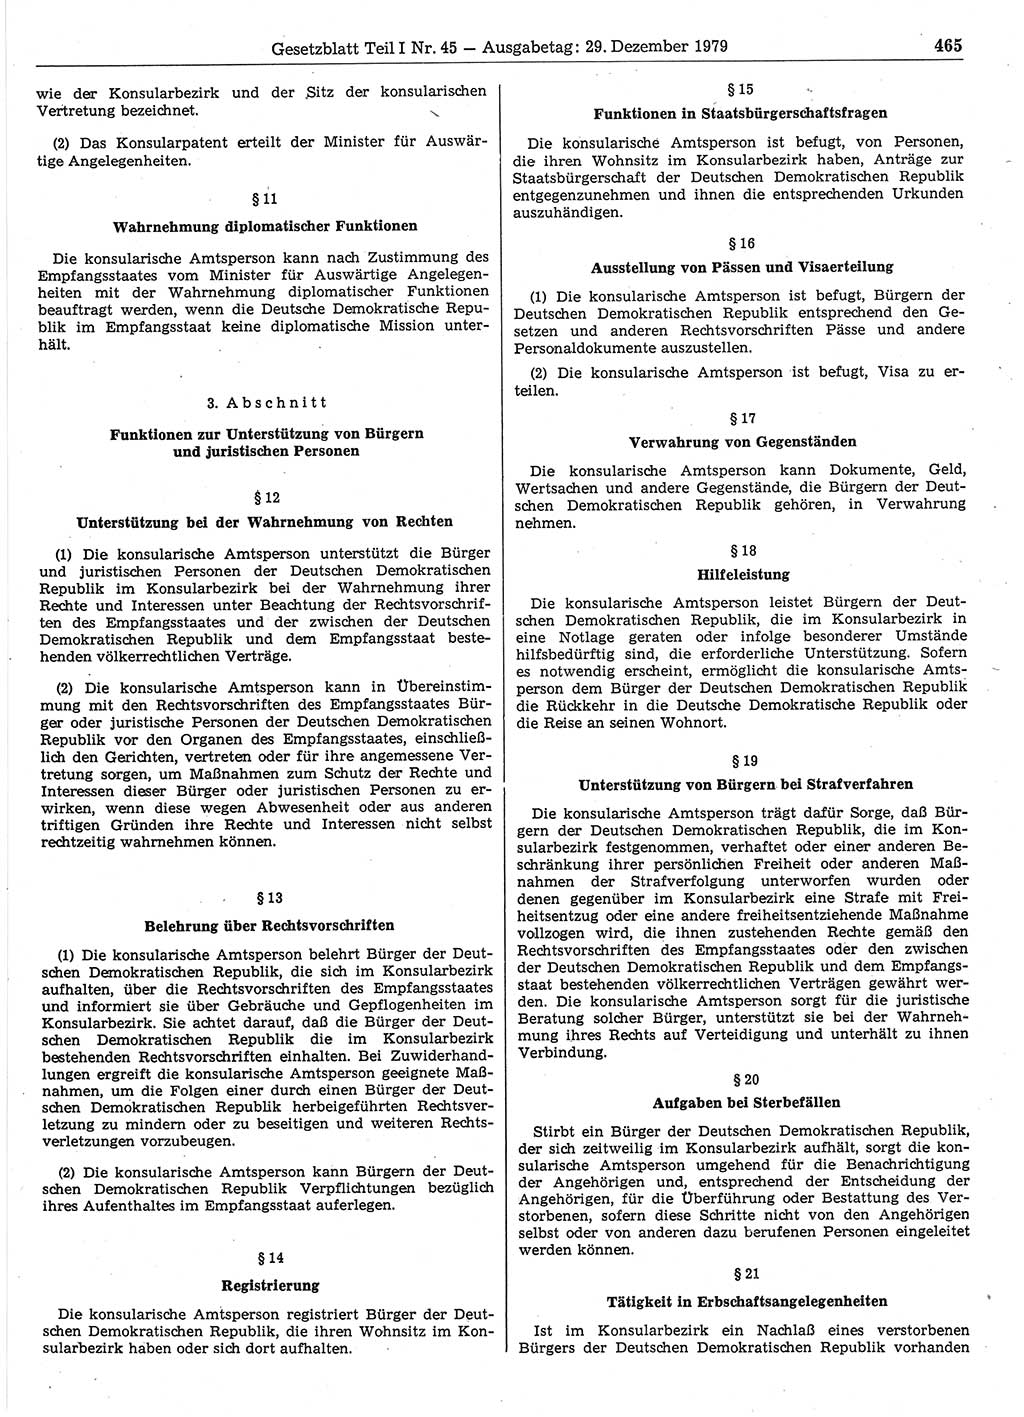 Gesetzblatt (GBl.) der Deutschen Demokratischen Republik (DDR) Teil Ⅰ 1979, Seite 465 (GBl. DDR Ⅰ 1979, S. 465)